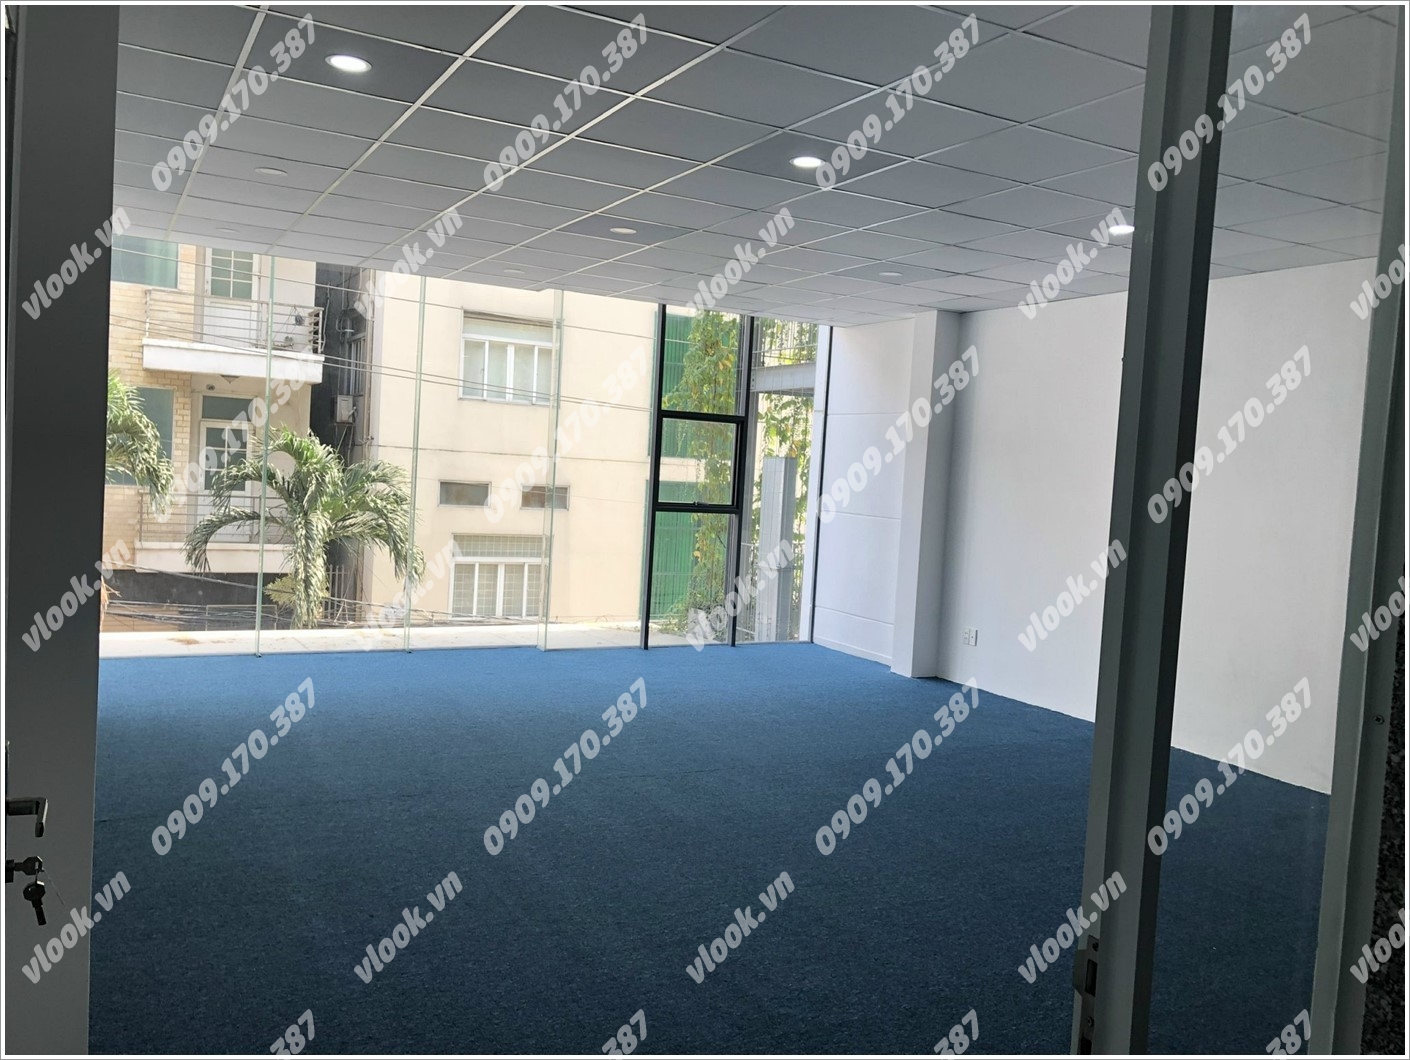 Cao ốc cho thuê văn phòng Tòa nhà Đông Nguyên, Điện Biên Phủ, Quận Bình Thạnh, TPHCM - vlook.vn